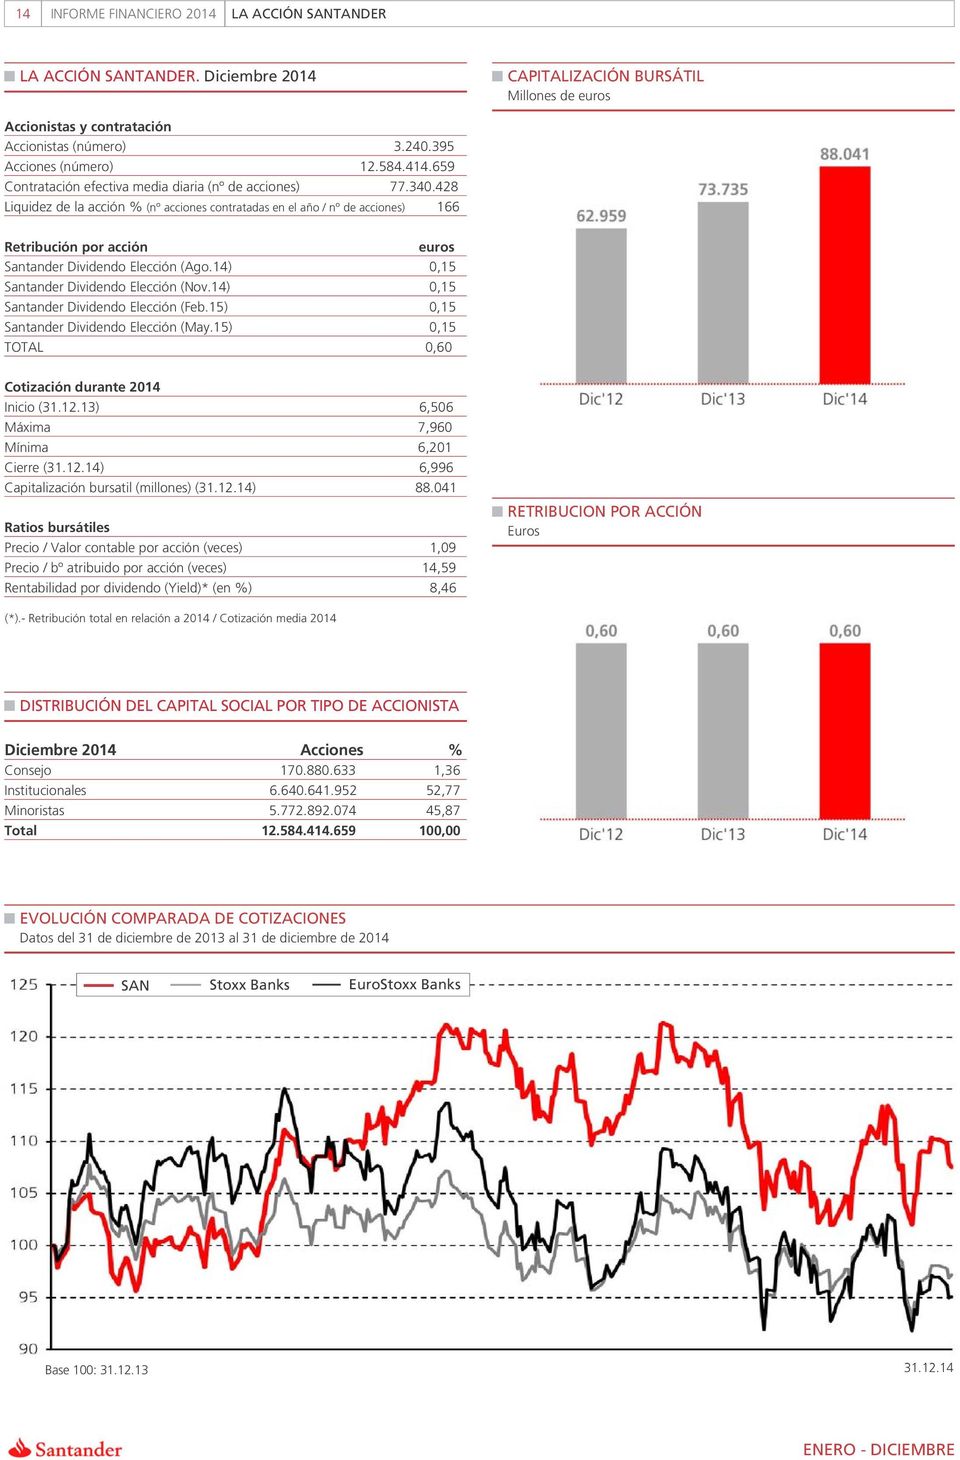 428 Liquidez de la acción % (n acciones contratadas en el año / n de acciones) 166 Retribución por acción euros Santander Dividendo Elección (Ago.14) 0,15 Santander Dividendo Elección (Nov.